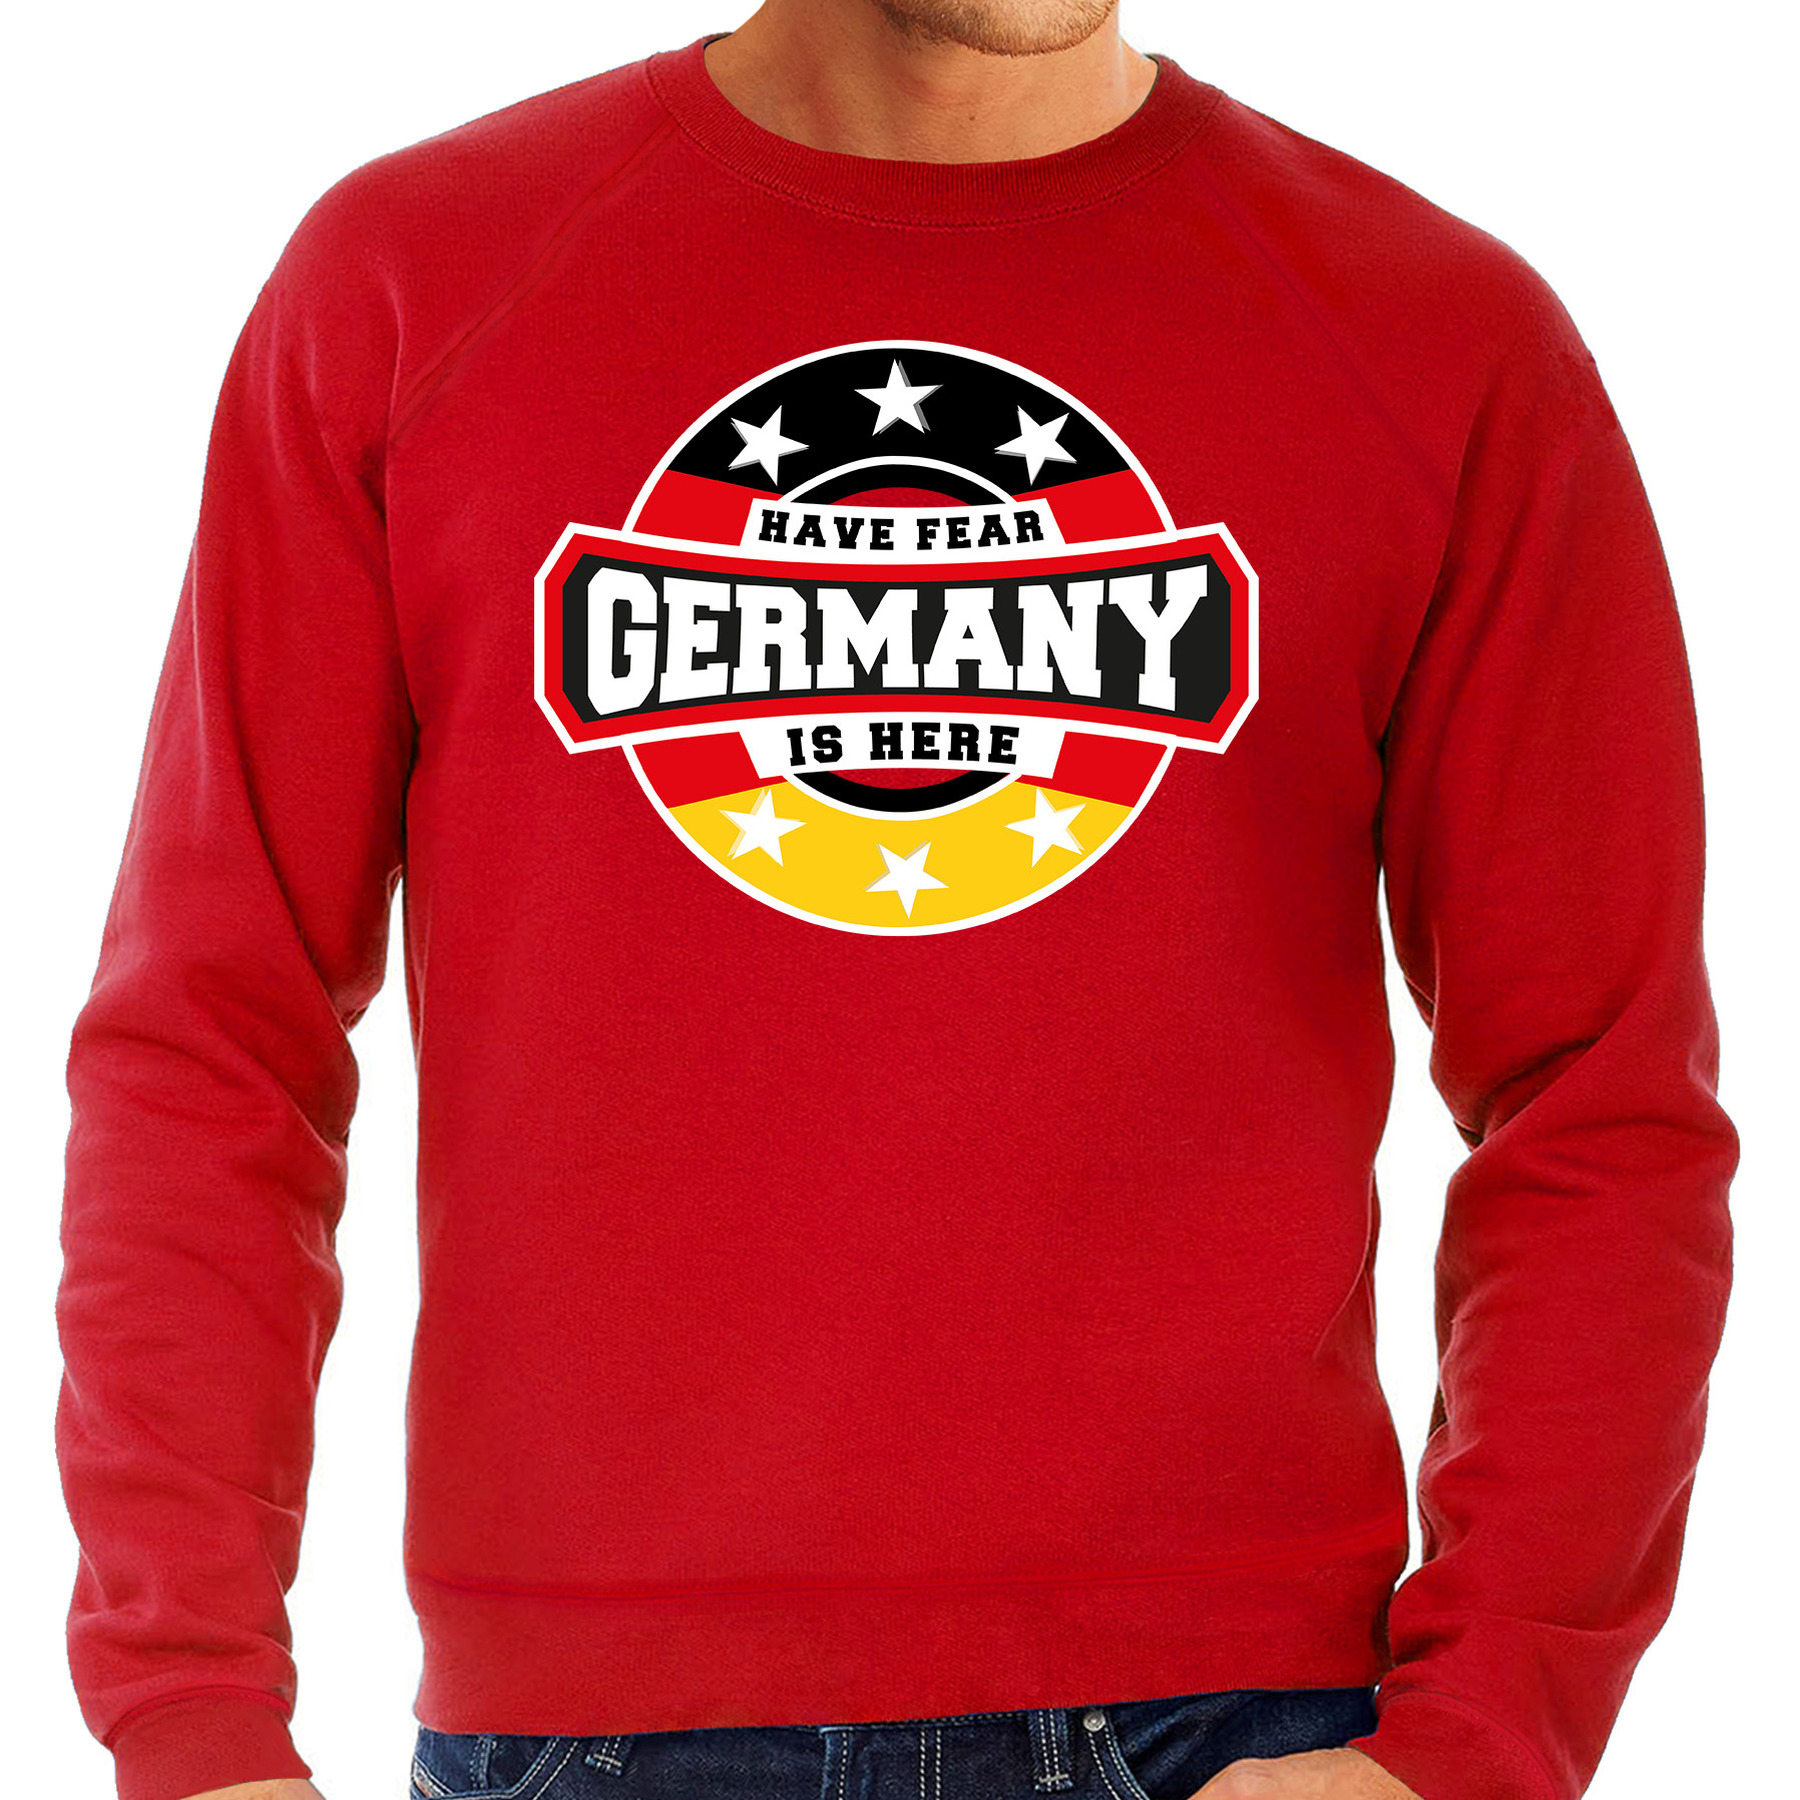 Have fear Germany-Duitsland is here supporter trui-kleding met sterren embleem rood voor heren